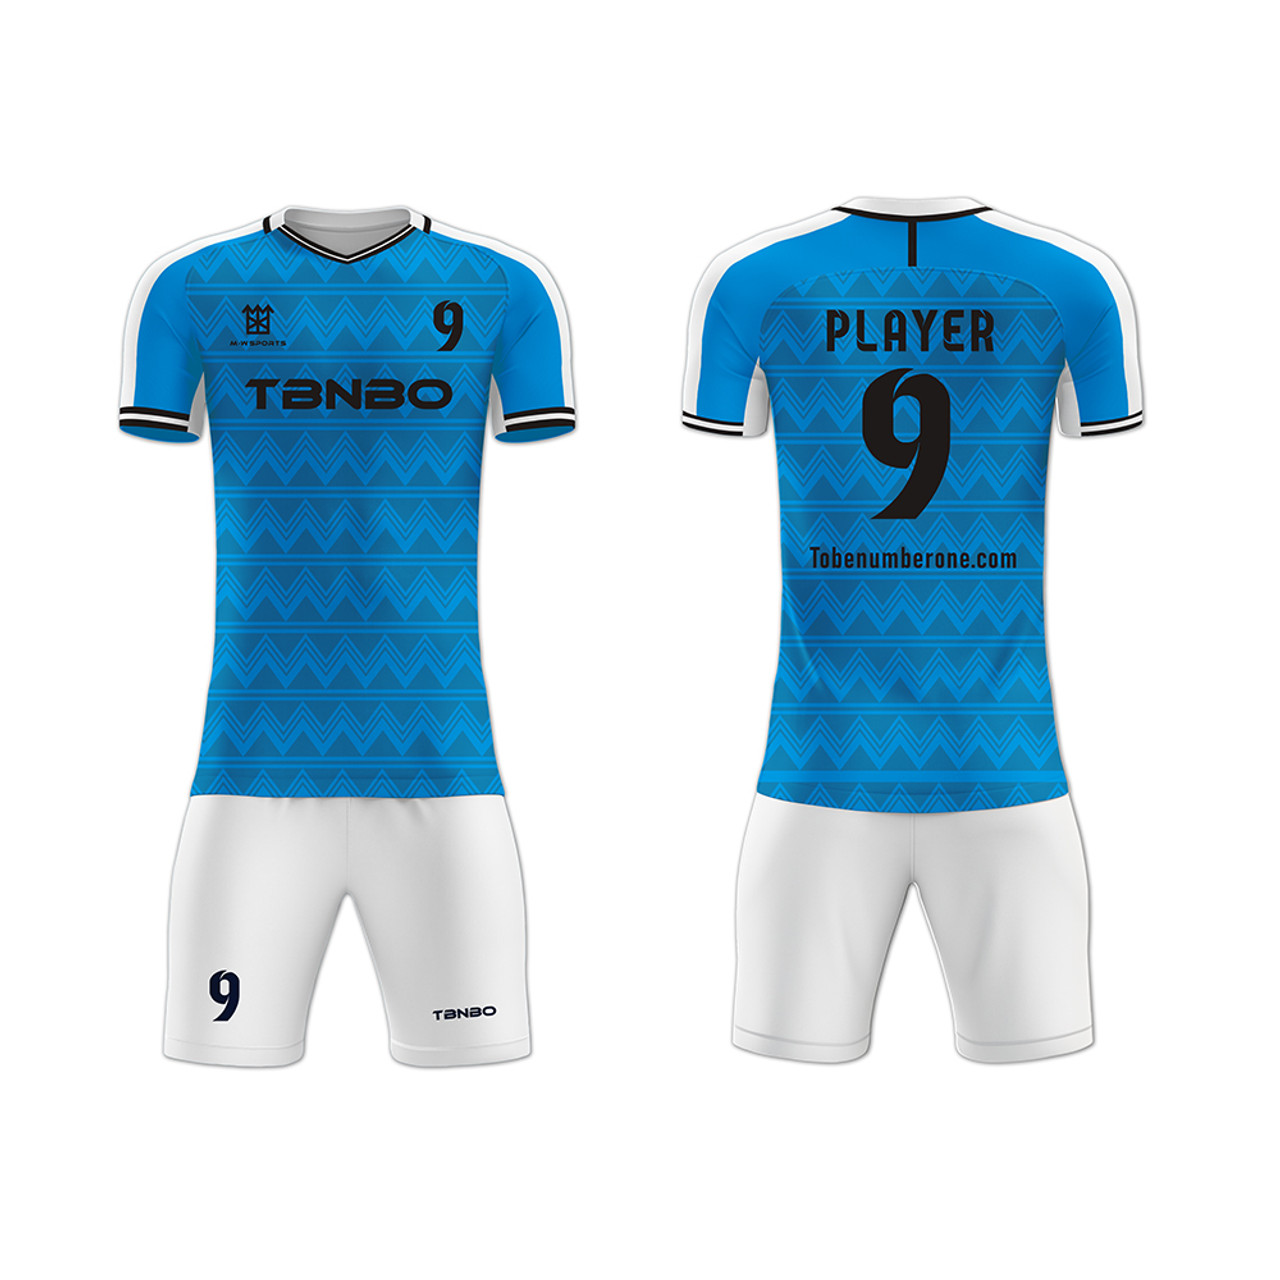 19-20 Chelsea Home Blue Soccer Jerseys Shirt(Player Version) - Cheap Soccer  Jerseys Shop